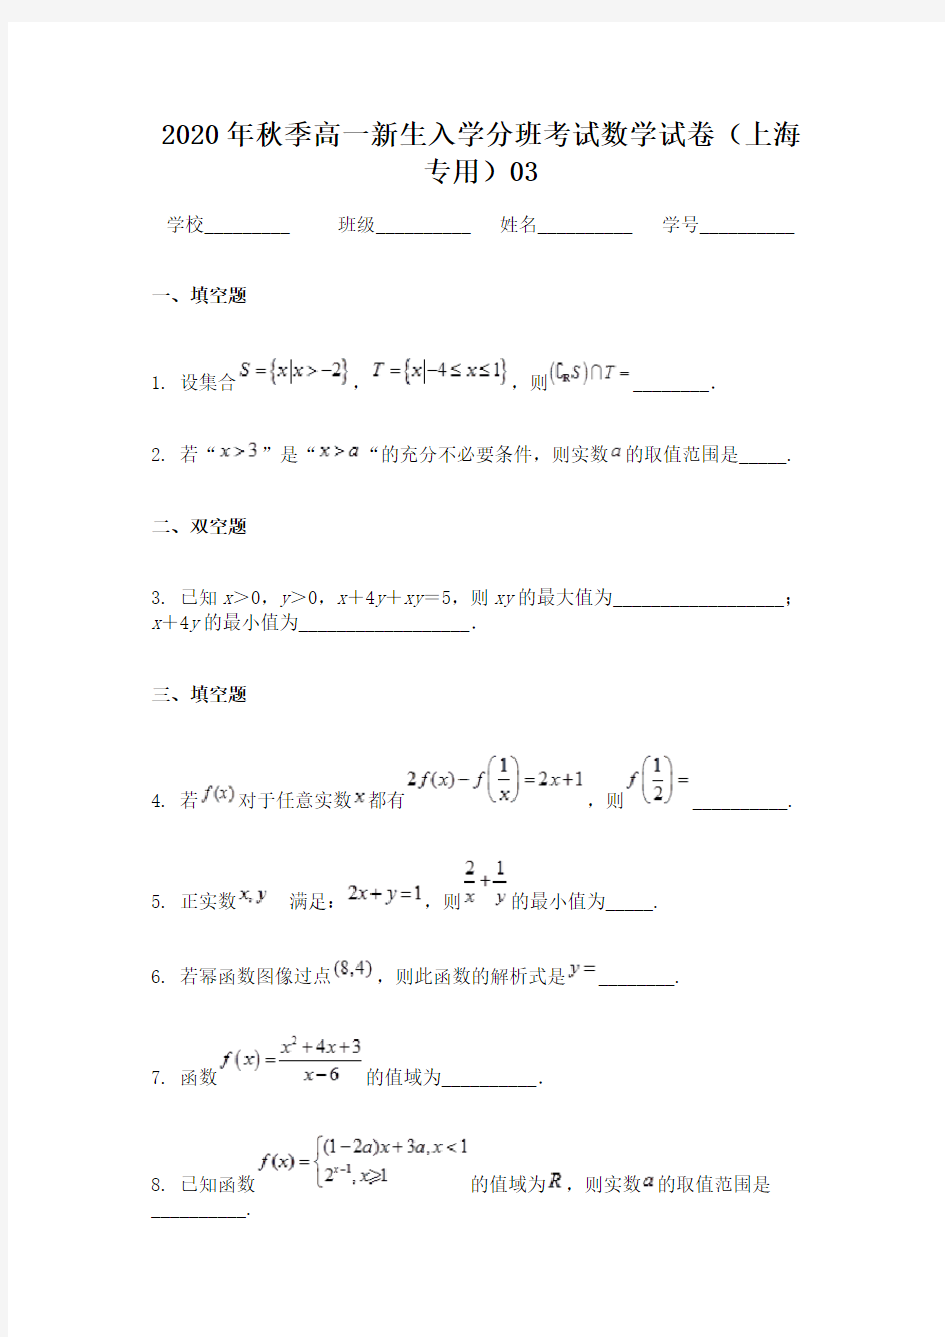 2020年秋季高一新生入学分班考试数学试卷(上海专用)03